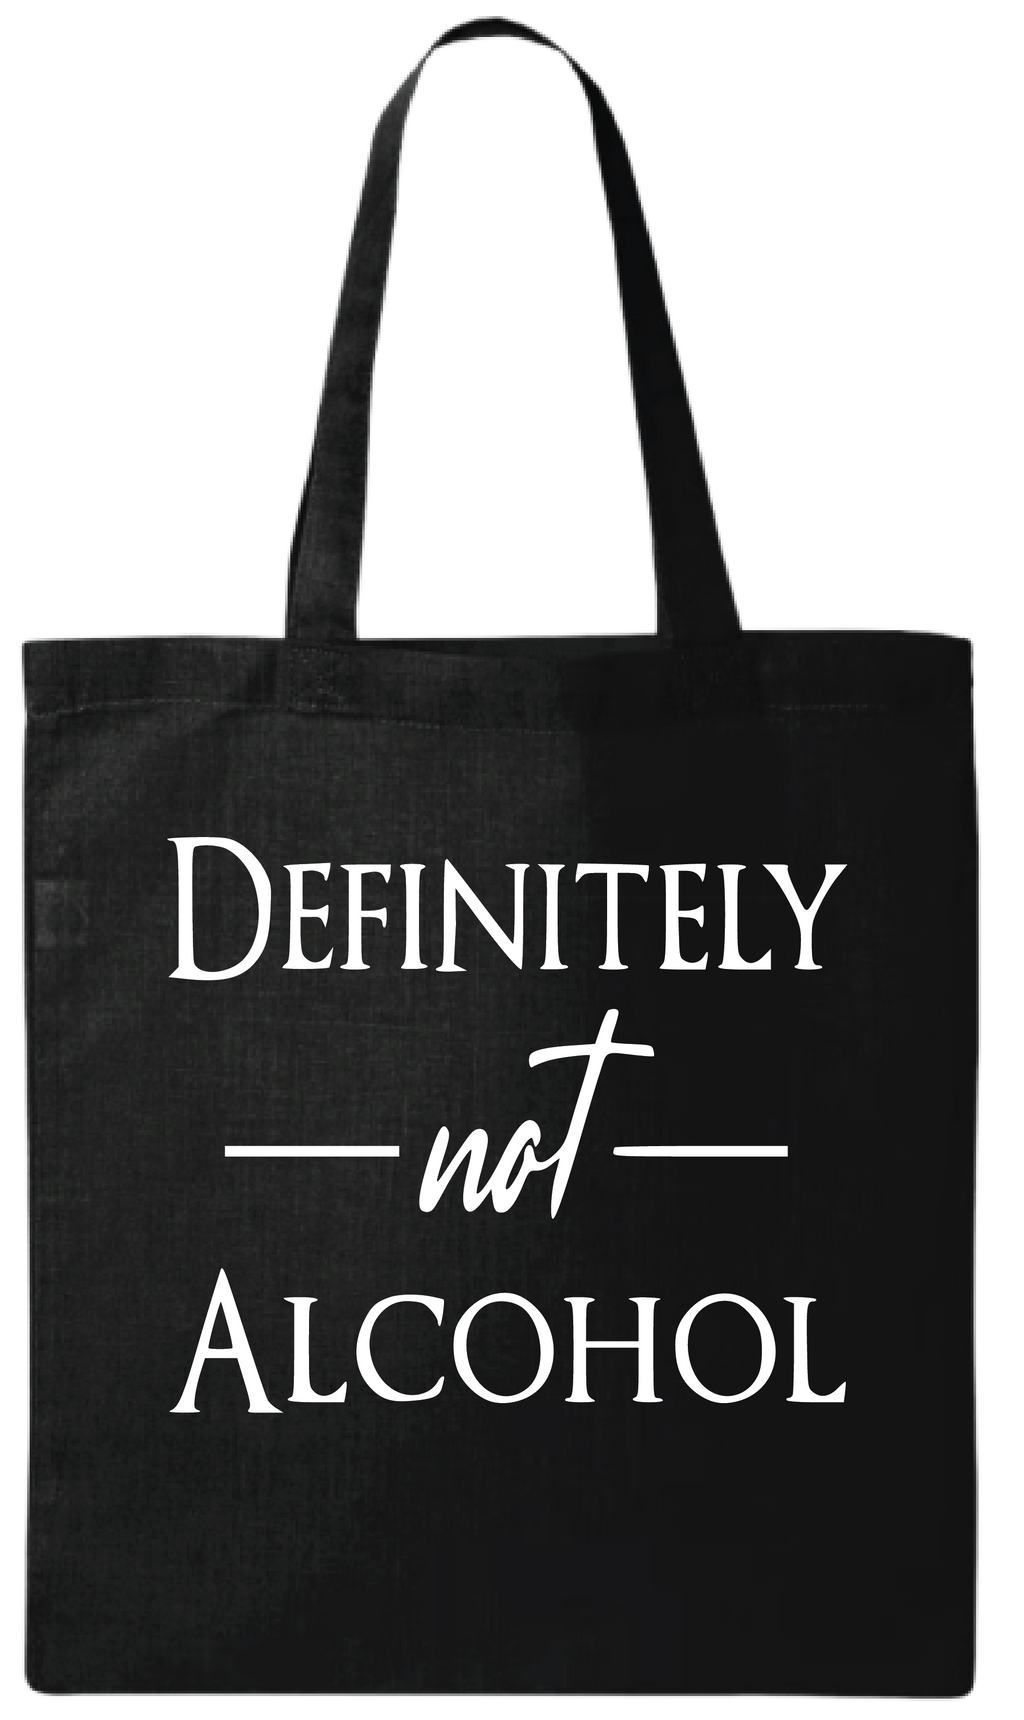 DEFINITELY not ALCOHOL